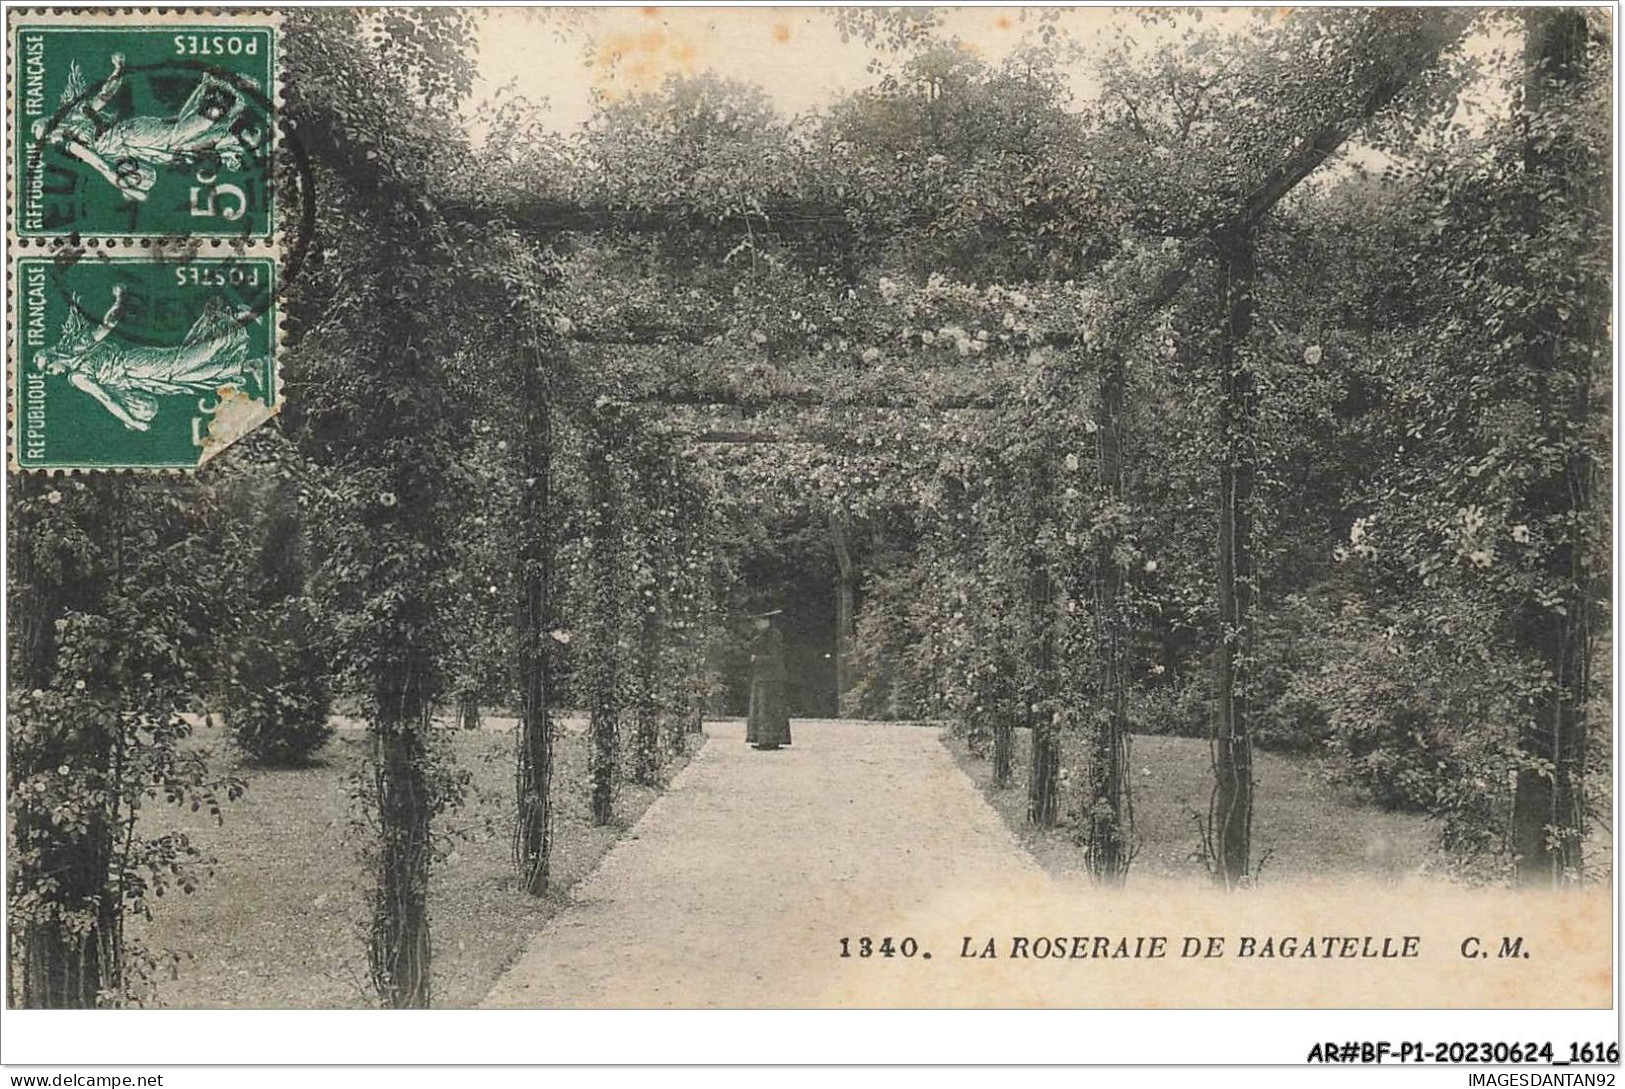 AR#BFP1-75-0808 - PARIS - La Roseraie De Bagatelle - Parks, Gardens